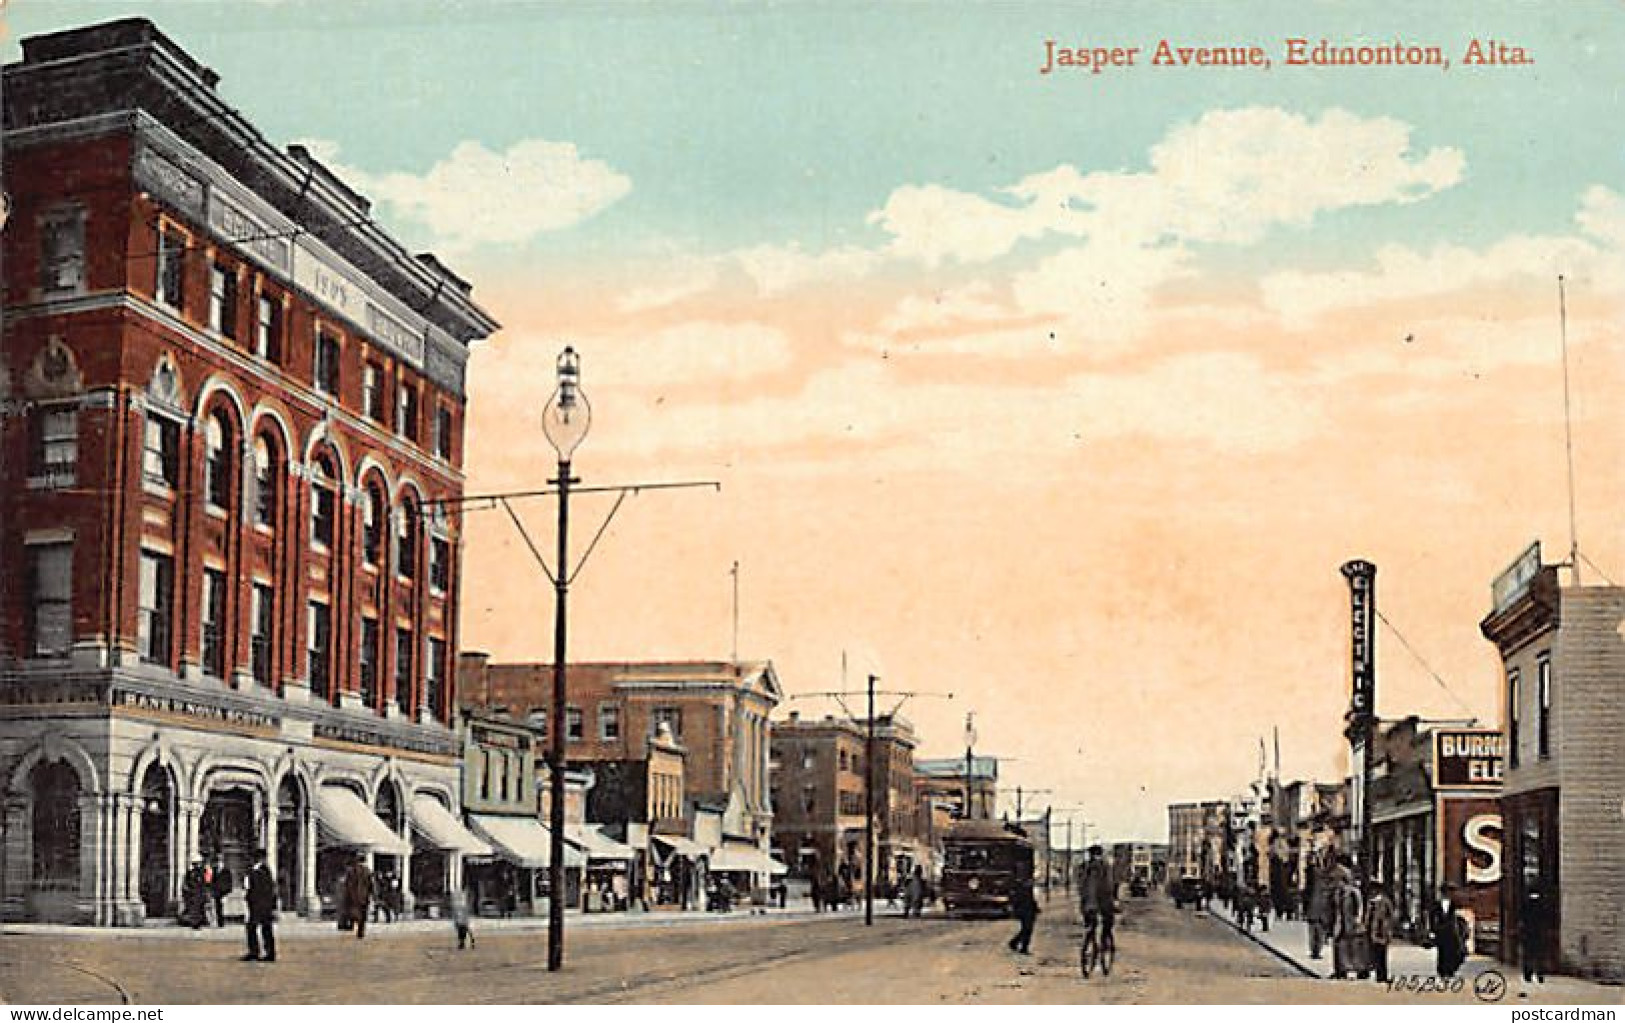 Canada - EDMONTON (AB) Jasper Avenue - Publ. The Valentine & Sons Publ. Co. Ltd.  - Edmonton